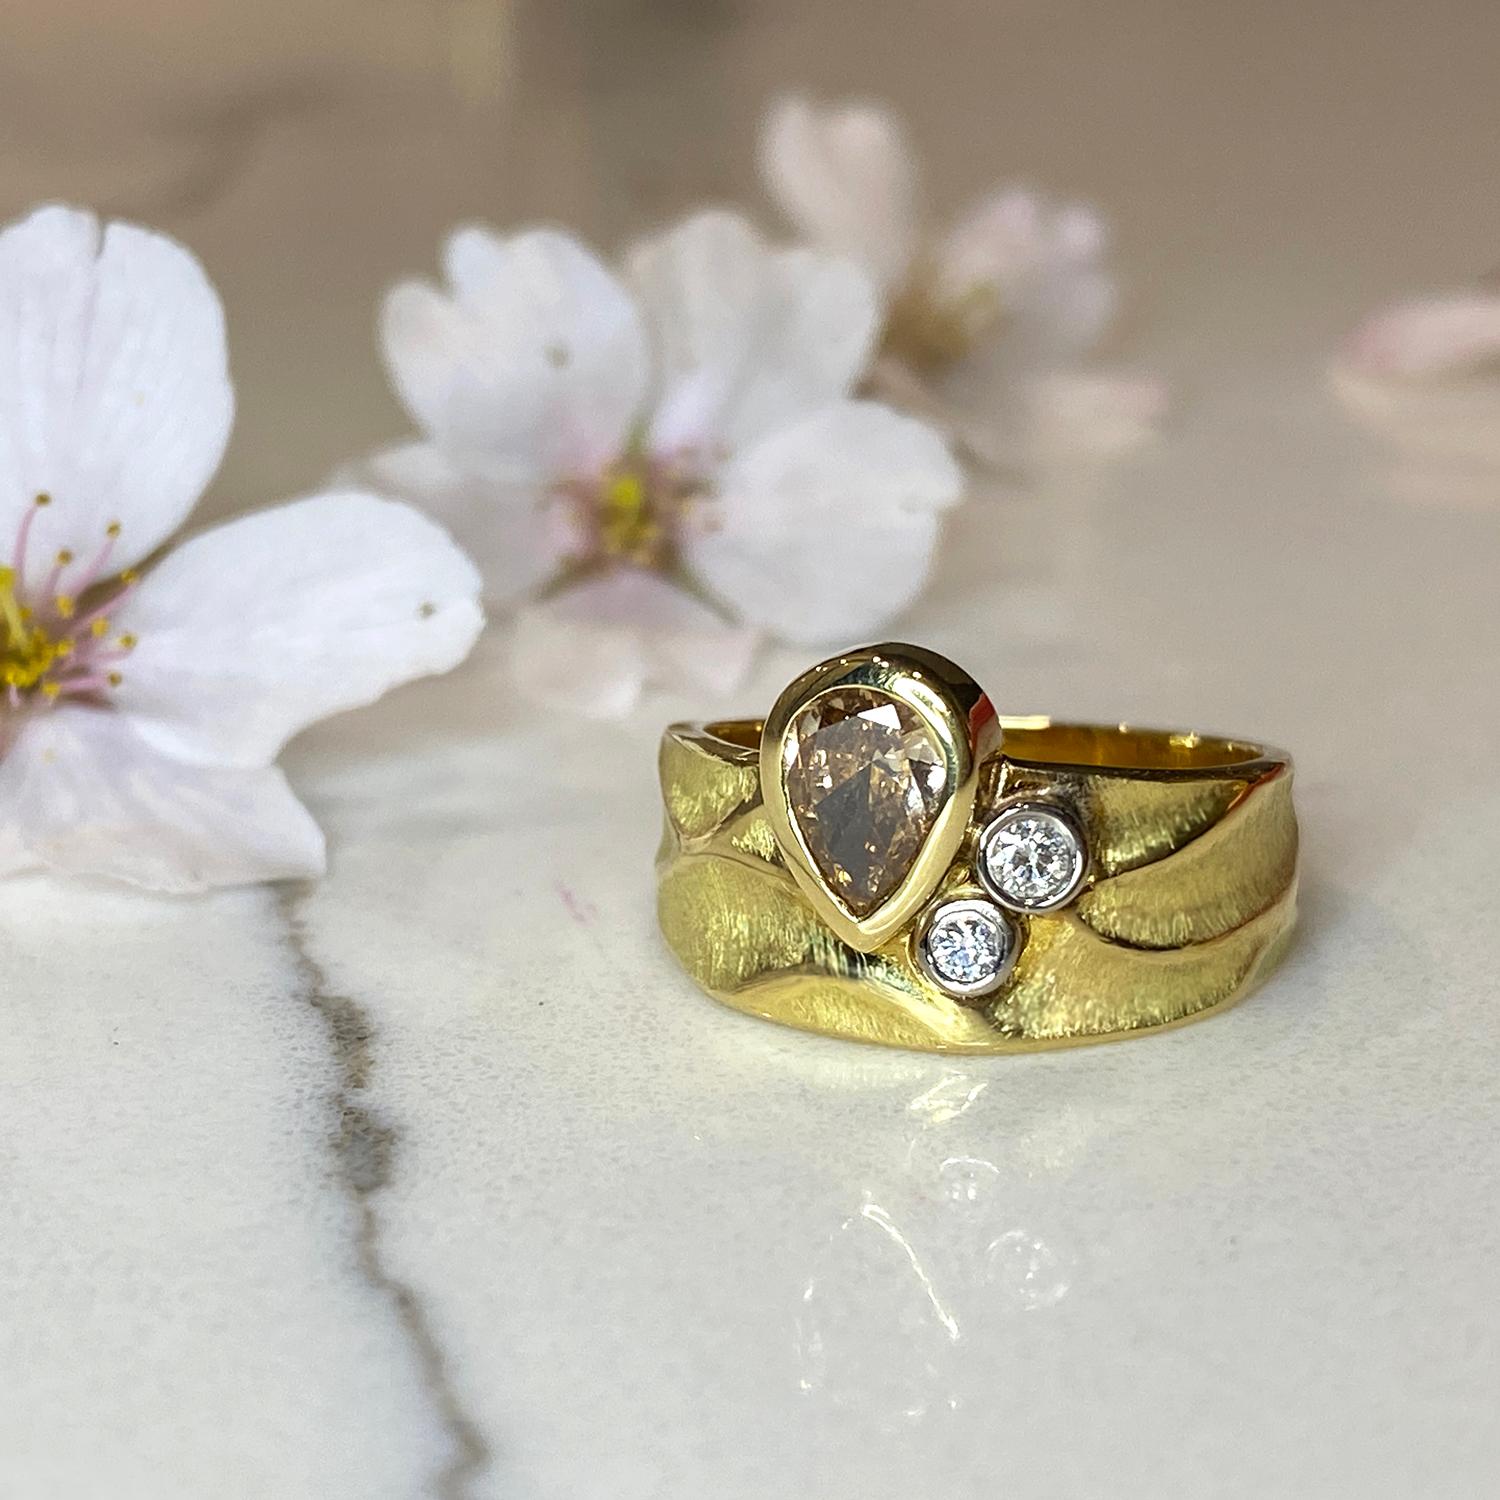 La bague Rebecca en or jaune 18 carats, unique en son genre, est ornée d'un diamant brun de 0,46 carat rehaussé de deux diamants blancs (d'un poids total de 0,07 carat) sertis dans de l'or blanc au palladium 18 carats. L'anneau contemporain mesure